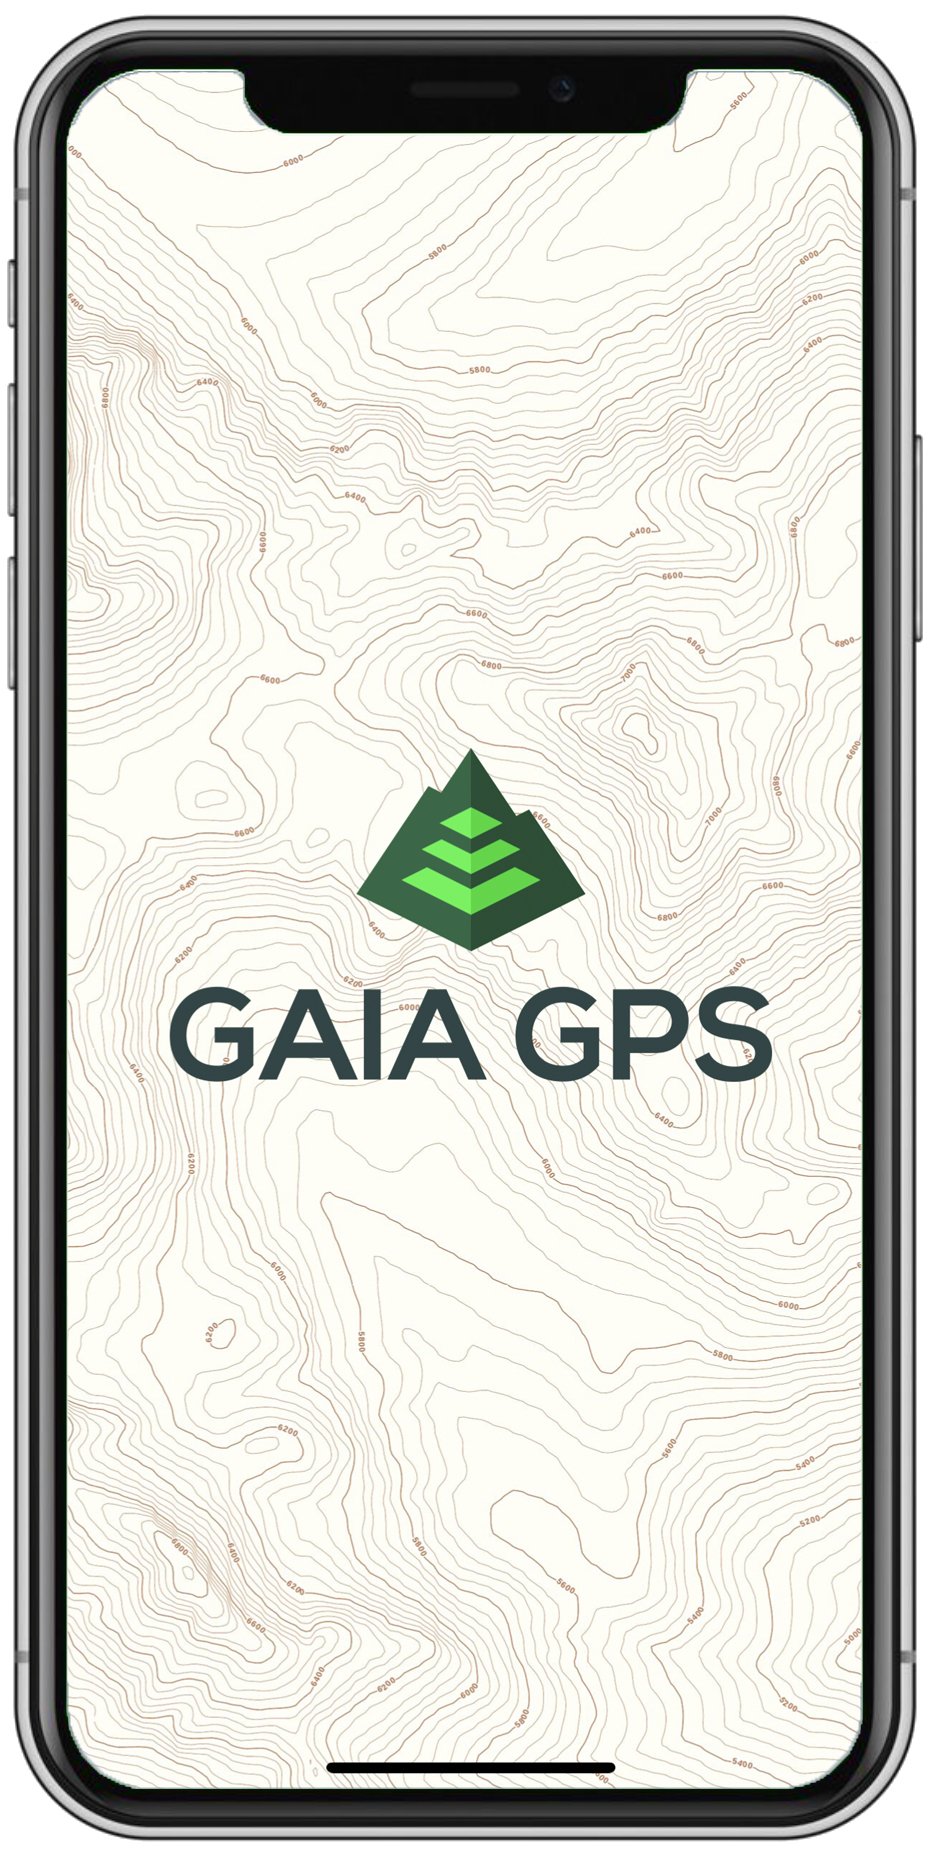 Open Gaia GPS app